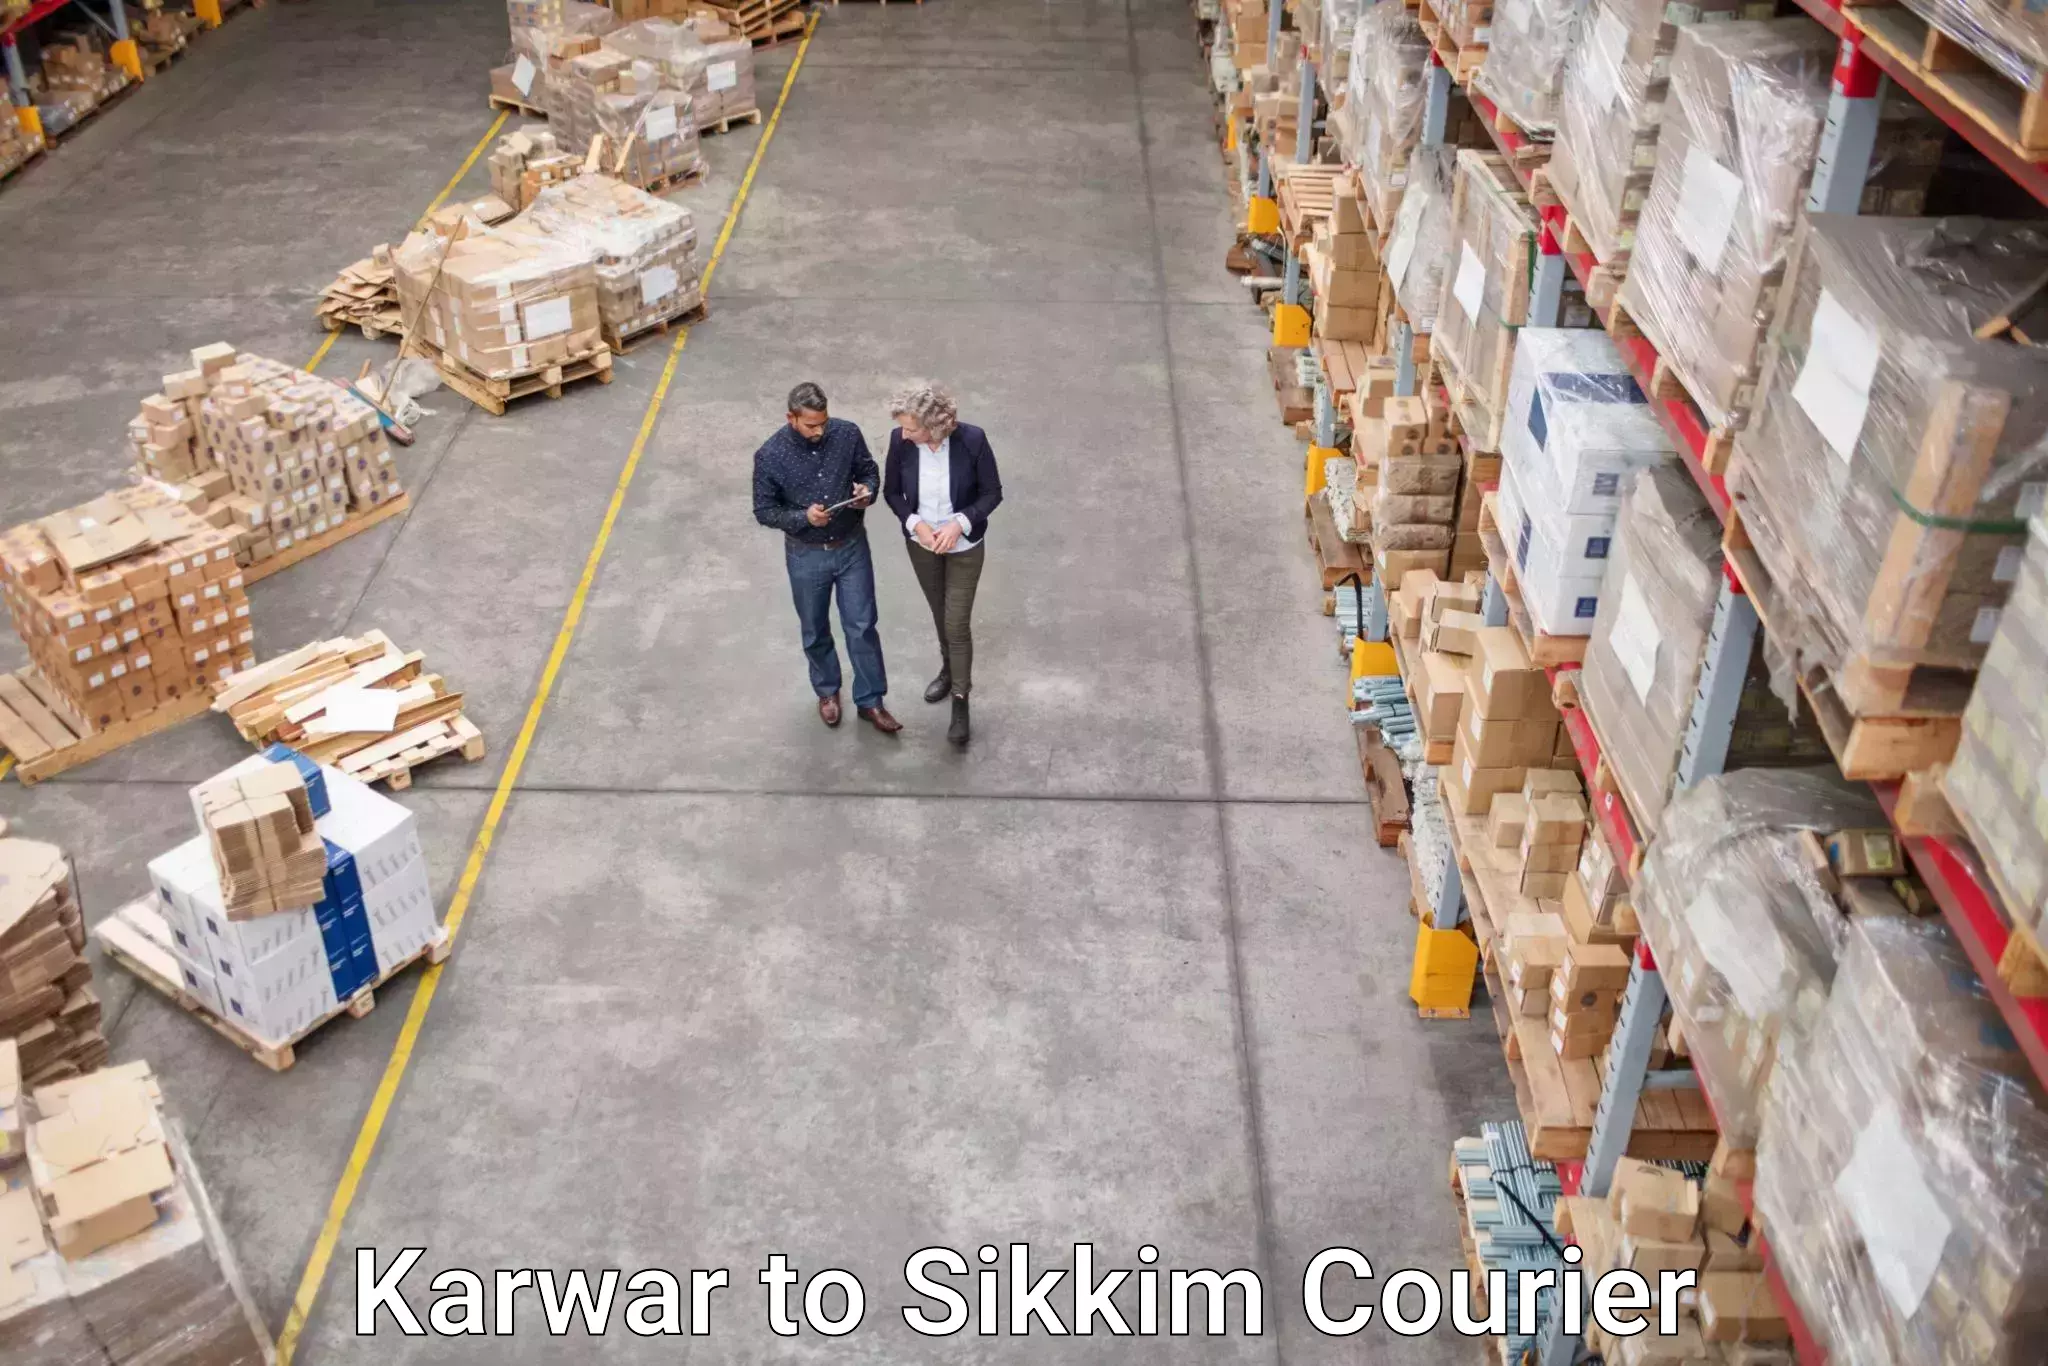 High-speed parcel service Karwar to Sikkim